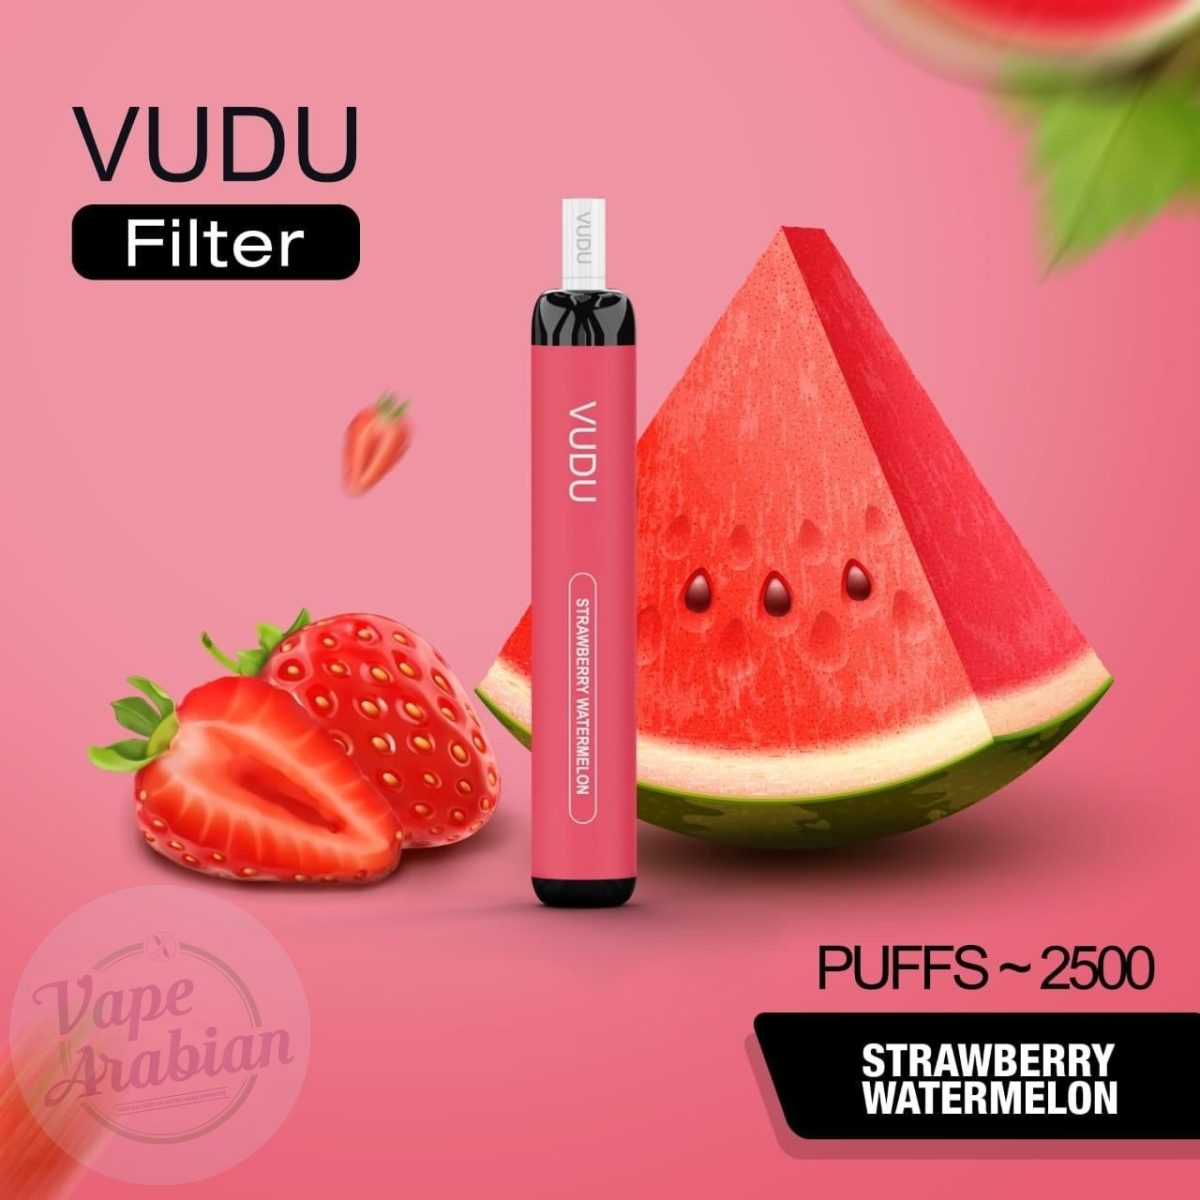 VUDU Filter Disposable 2500 Puffs- Strawberry Watermelon